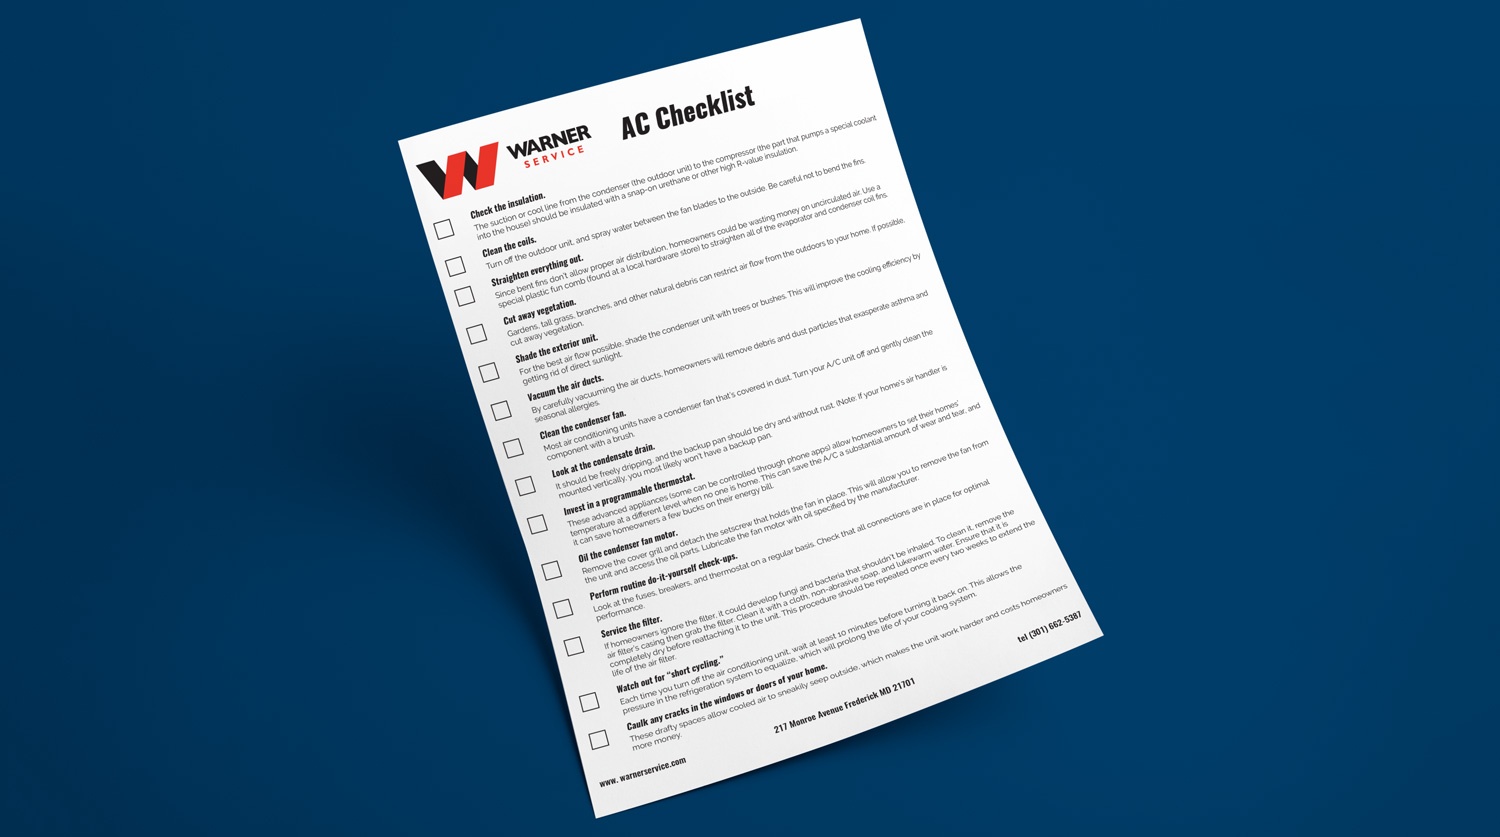 Warner Service Air Conditioning Checklist